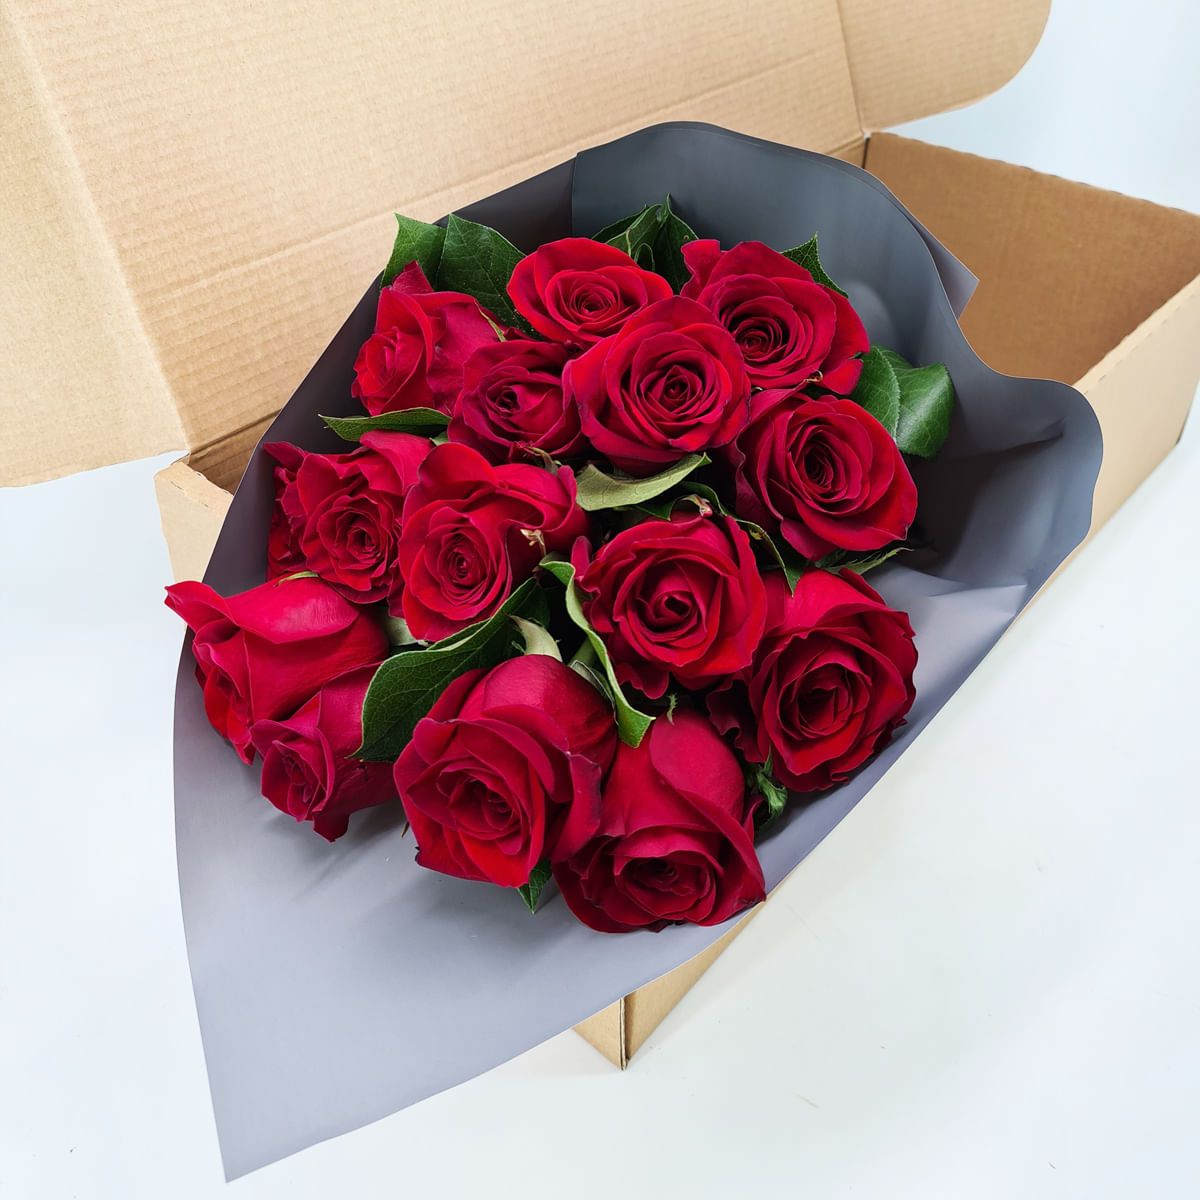 Buchet de 15 trandafiri rosii in cutie Floria imagine 2022